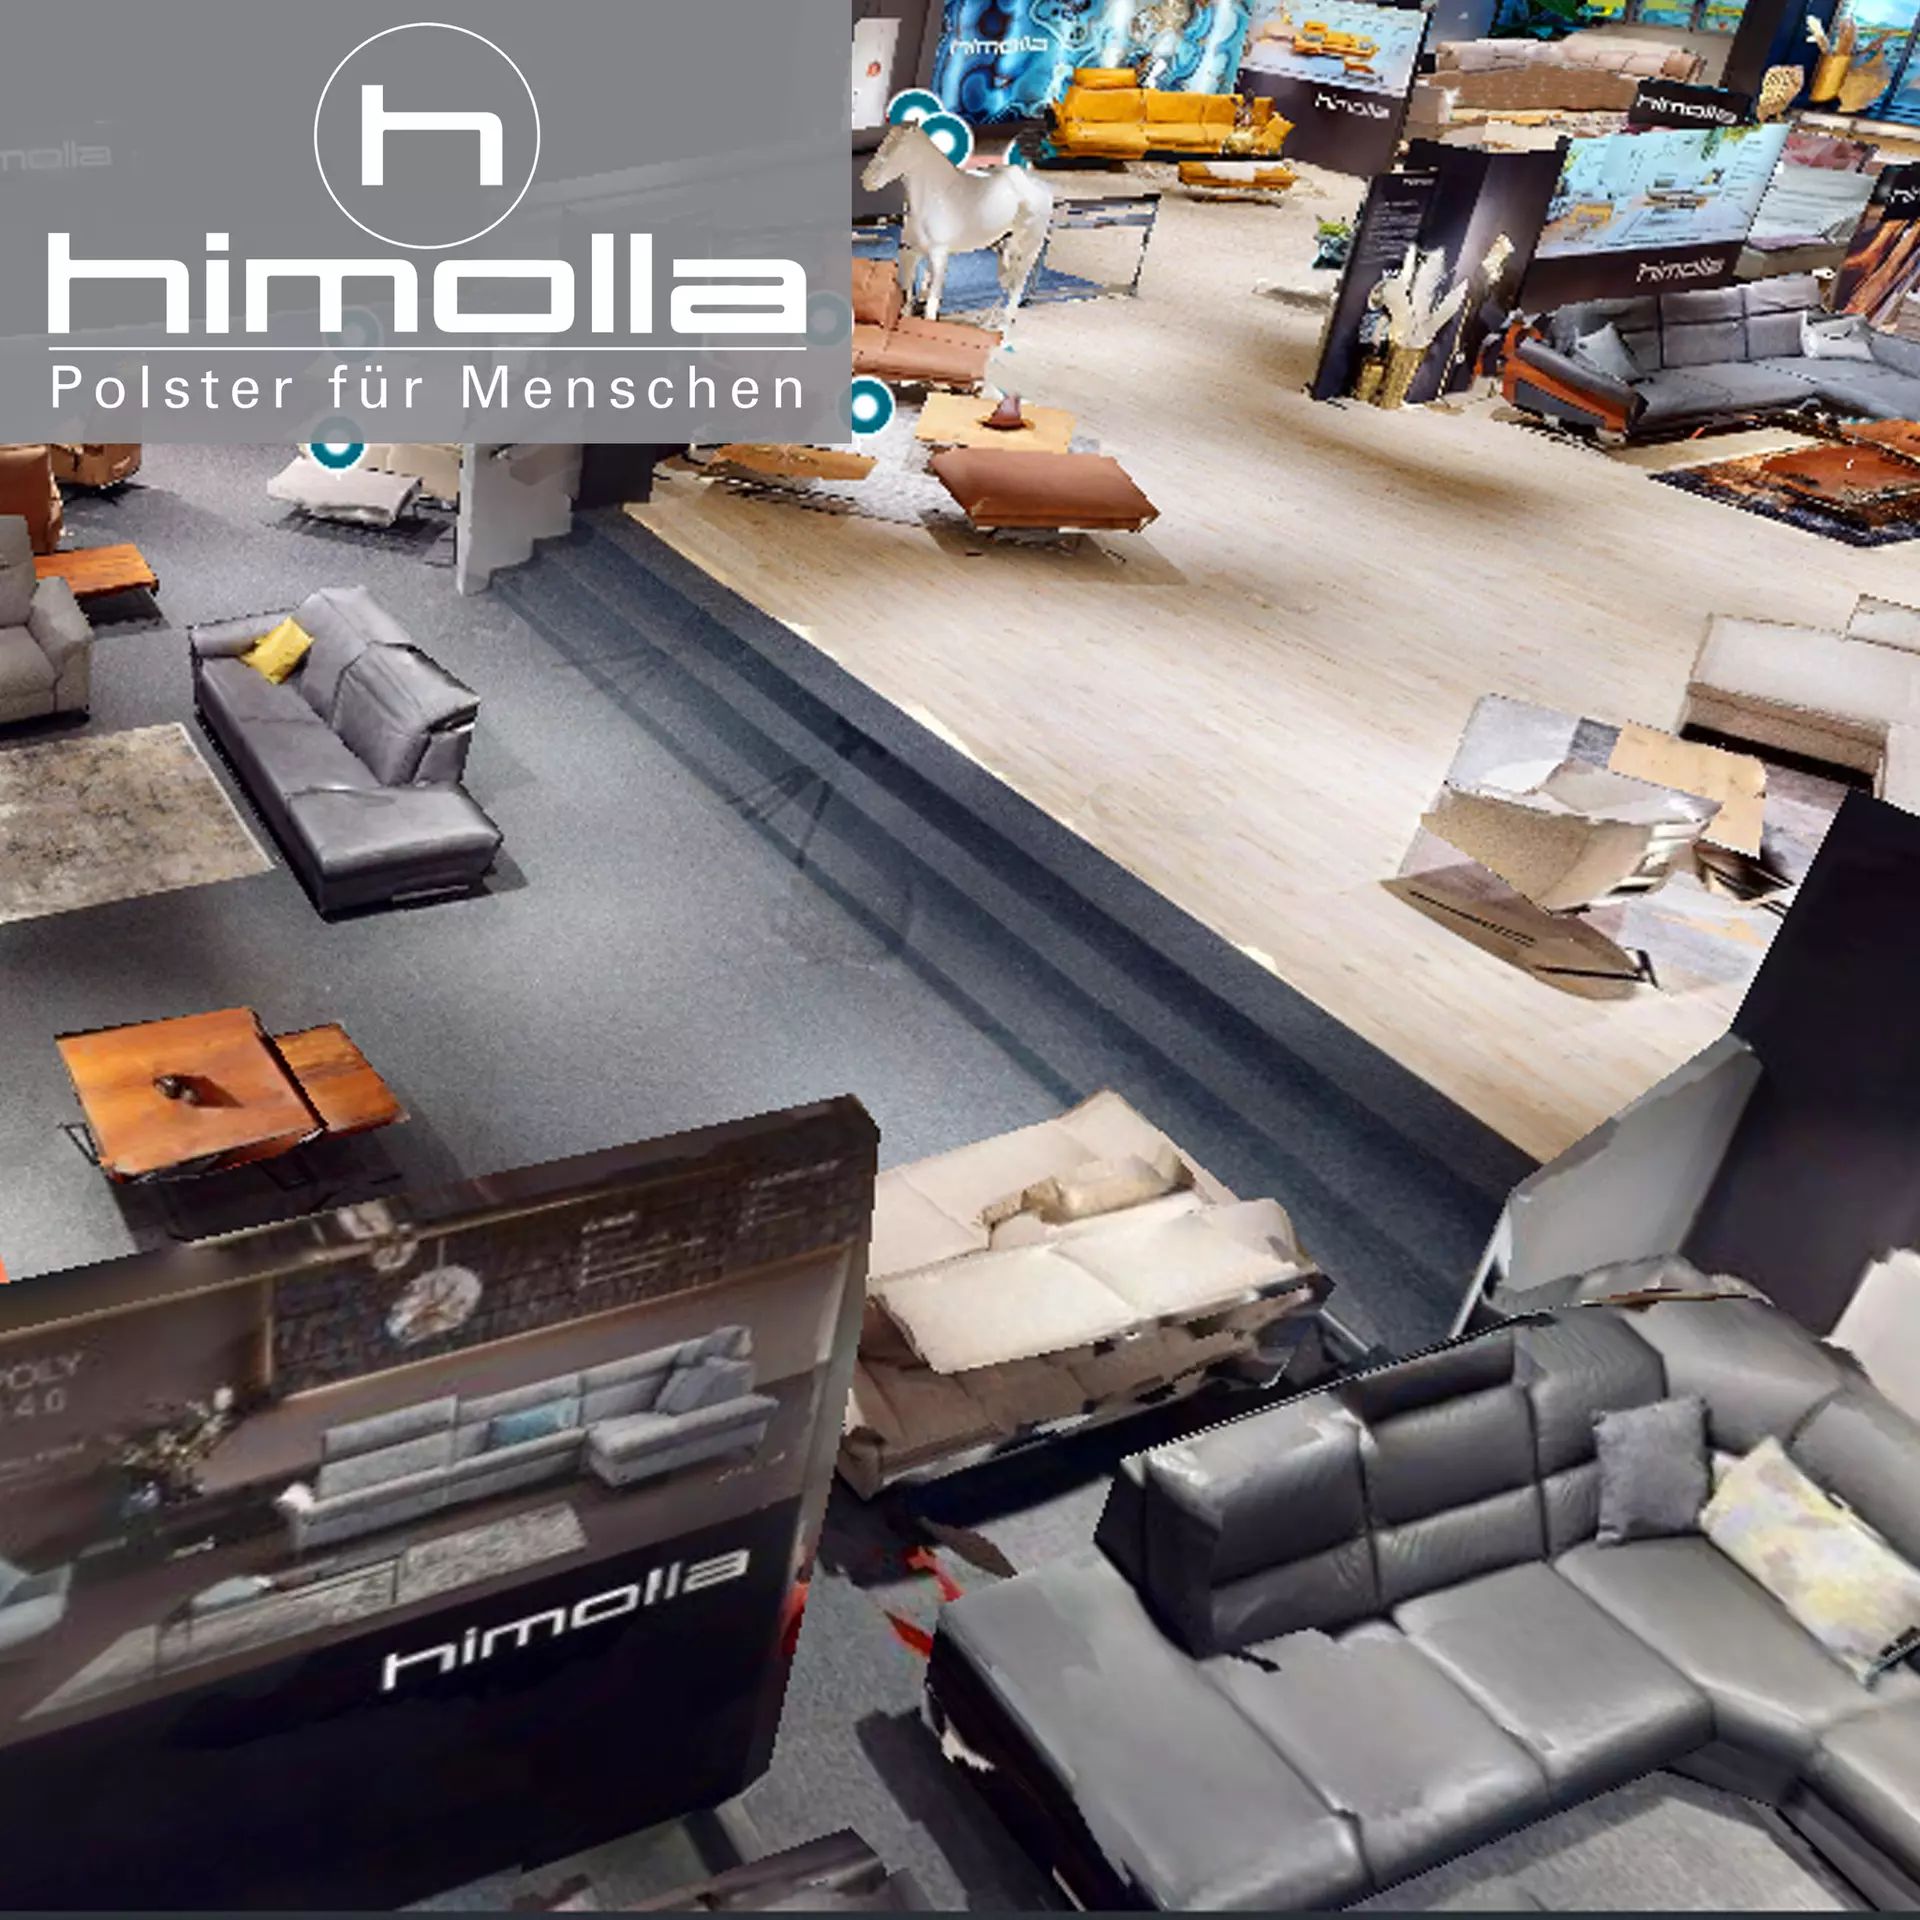 Starten Sie den virtuellen Rundgang durch die Himolla Ausstellung im Einrichtungshaus Möbel Inhofer